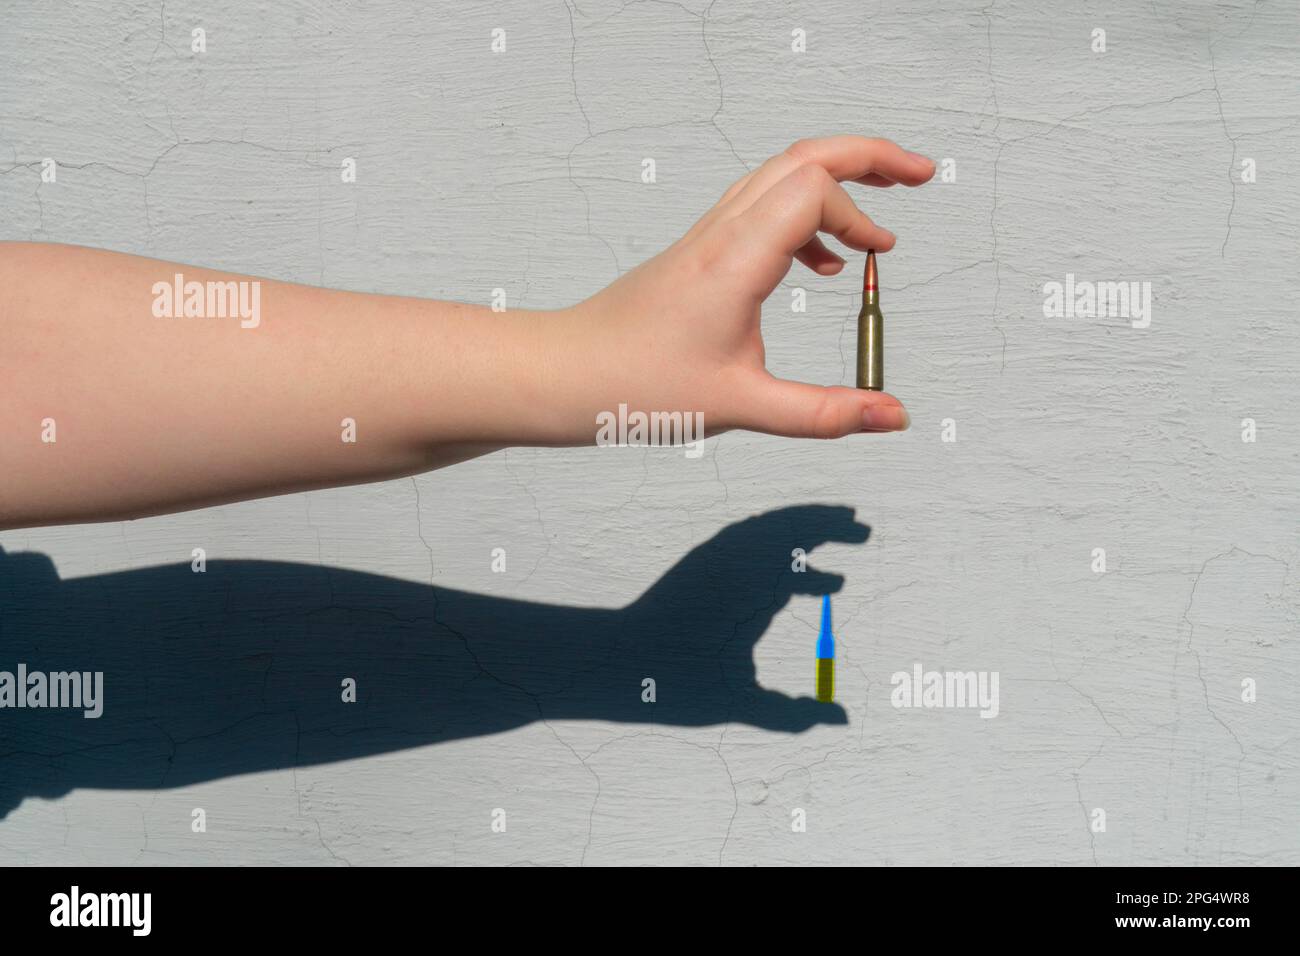 Gewehrpatrone in der Hand. Handschatten an der Wand. Der Schatten der Patrone hat eine gelb-blaue Farbe. Konzept der militärischen Unterstützung für die Ukraine Stockfoto